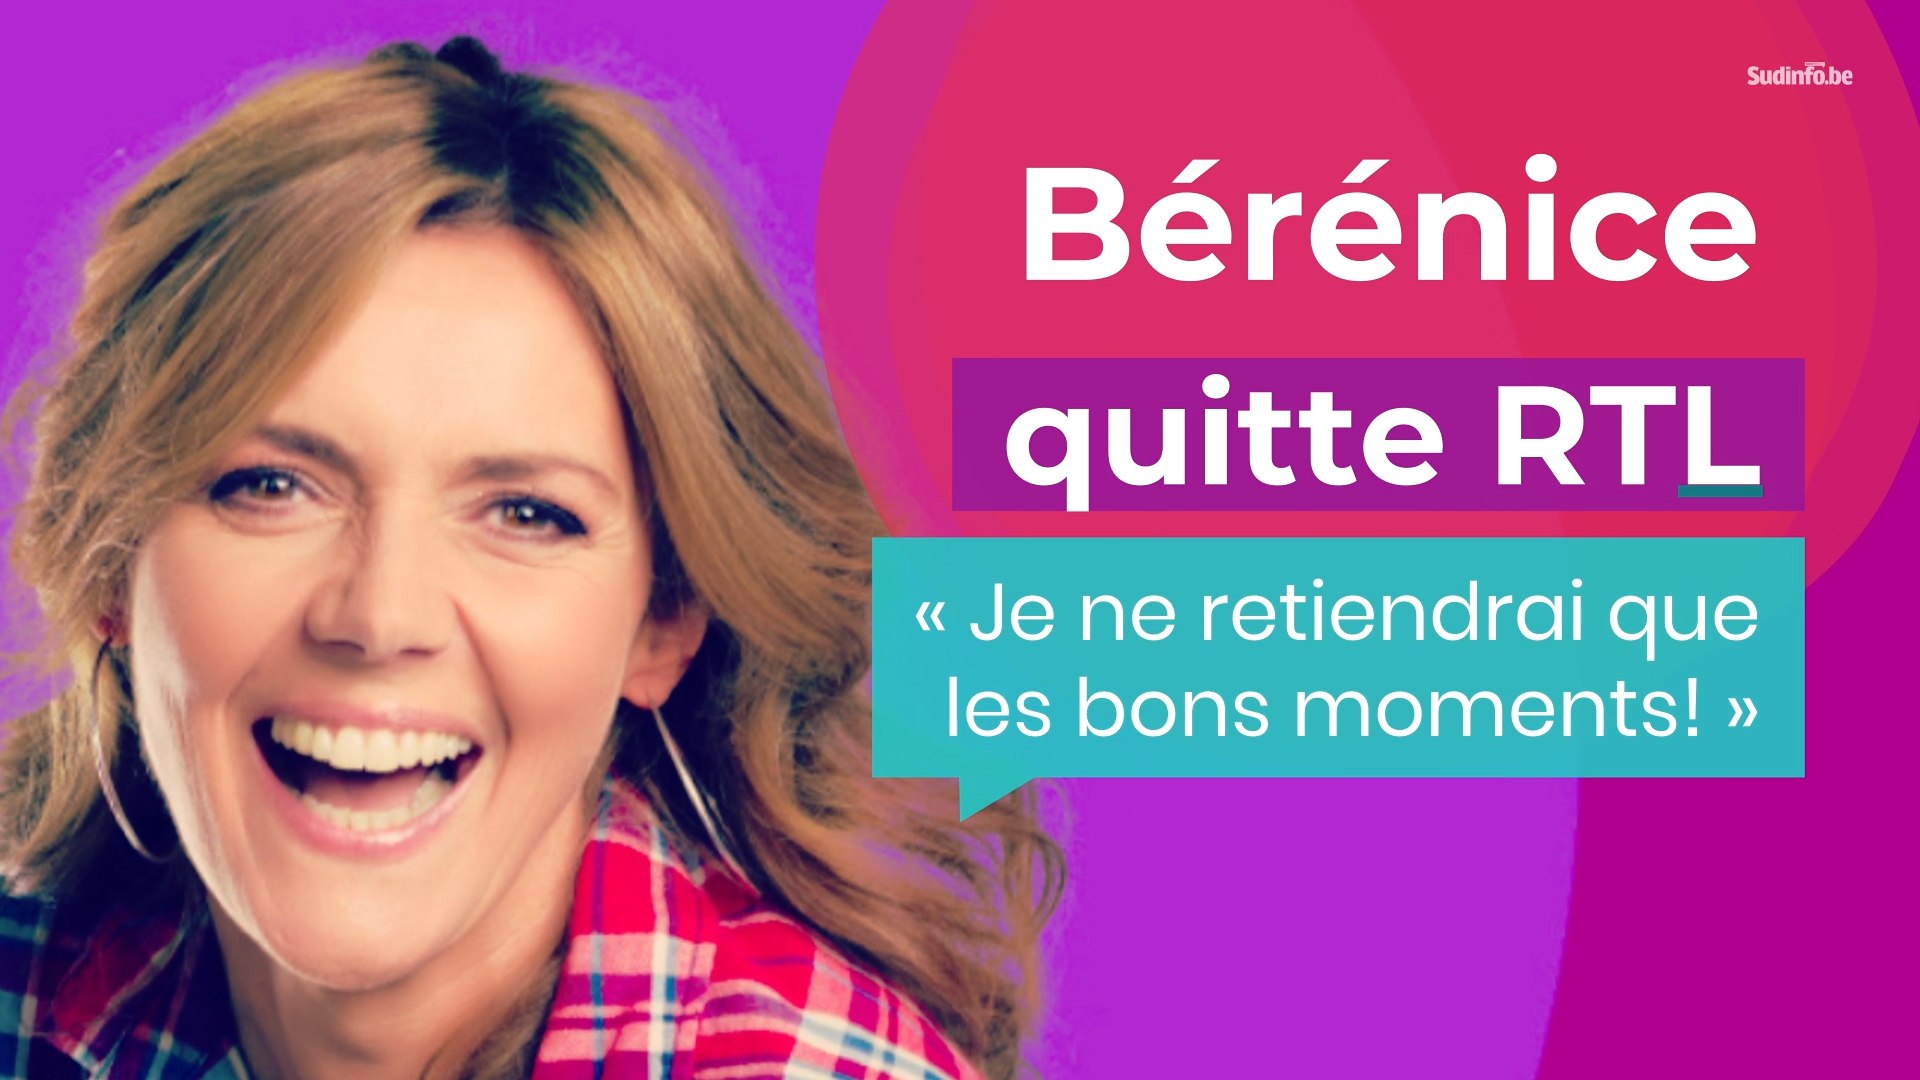 Bérénice quitte RTL : "Que des bons moments" - Vidéo Dailymotion